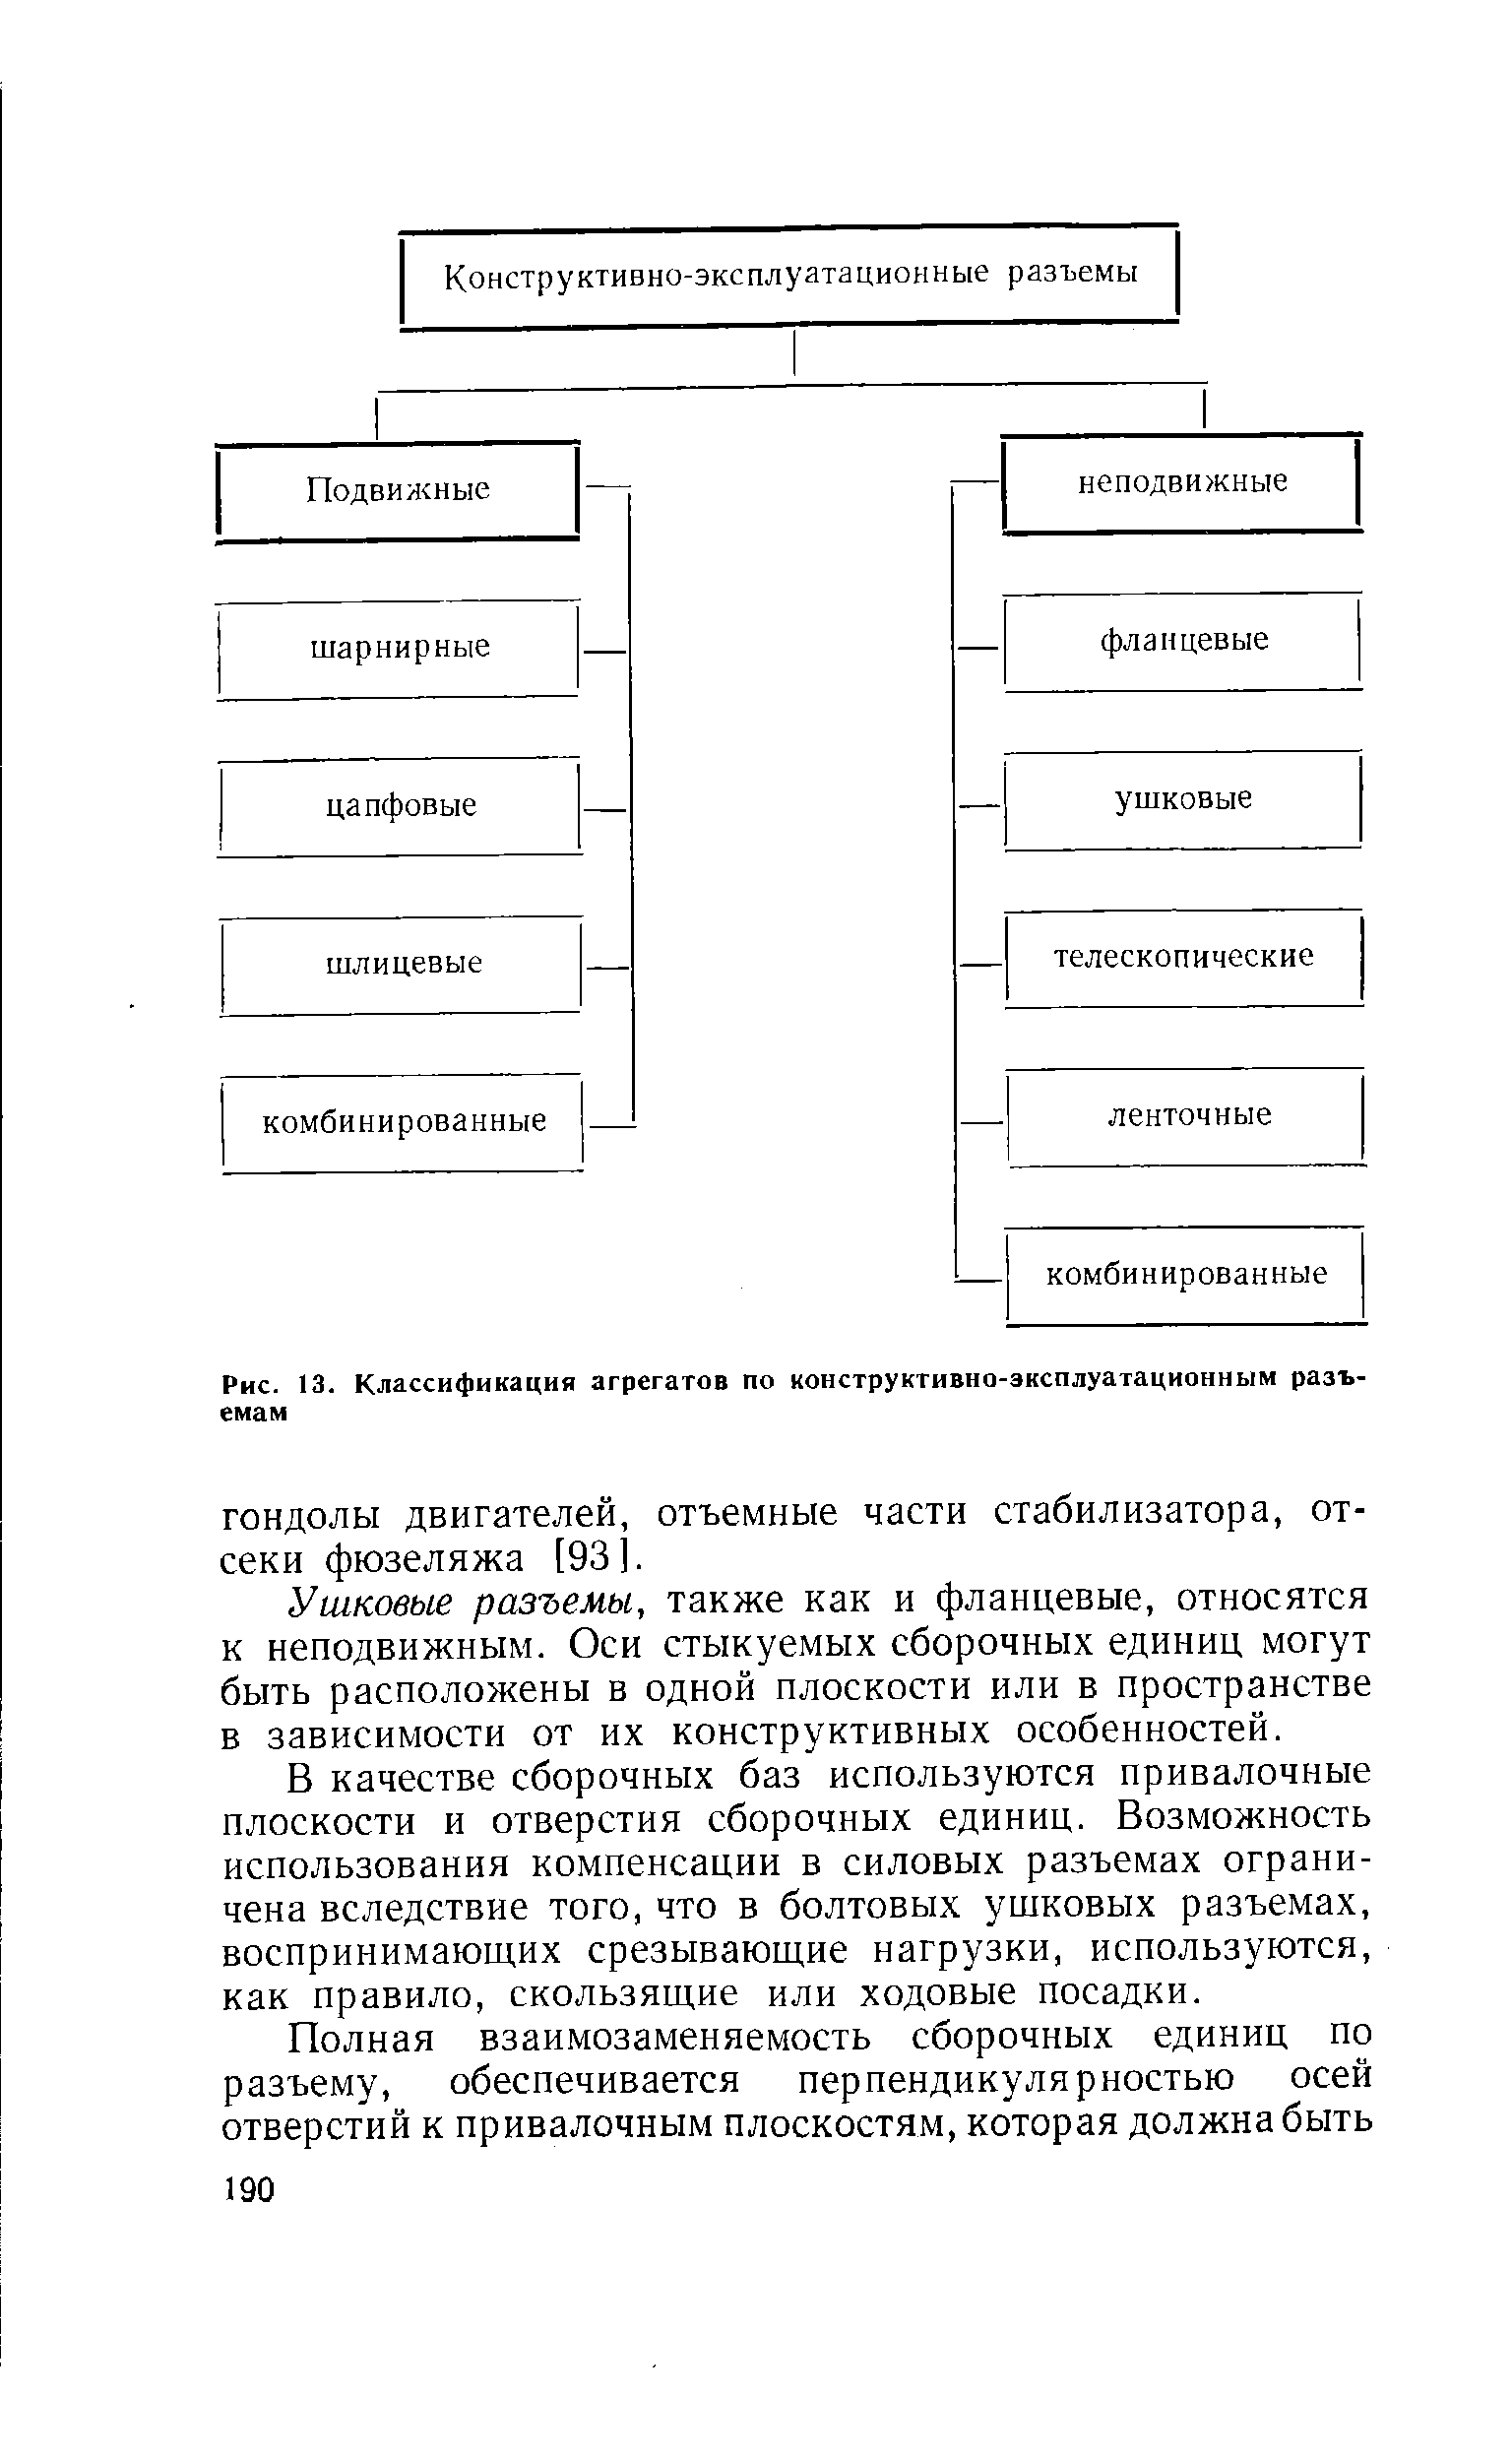 Рис. 13. Классификация агрегатов по конструктивно-эксплуатационным разъемам
